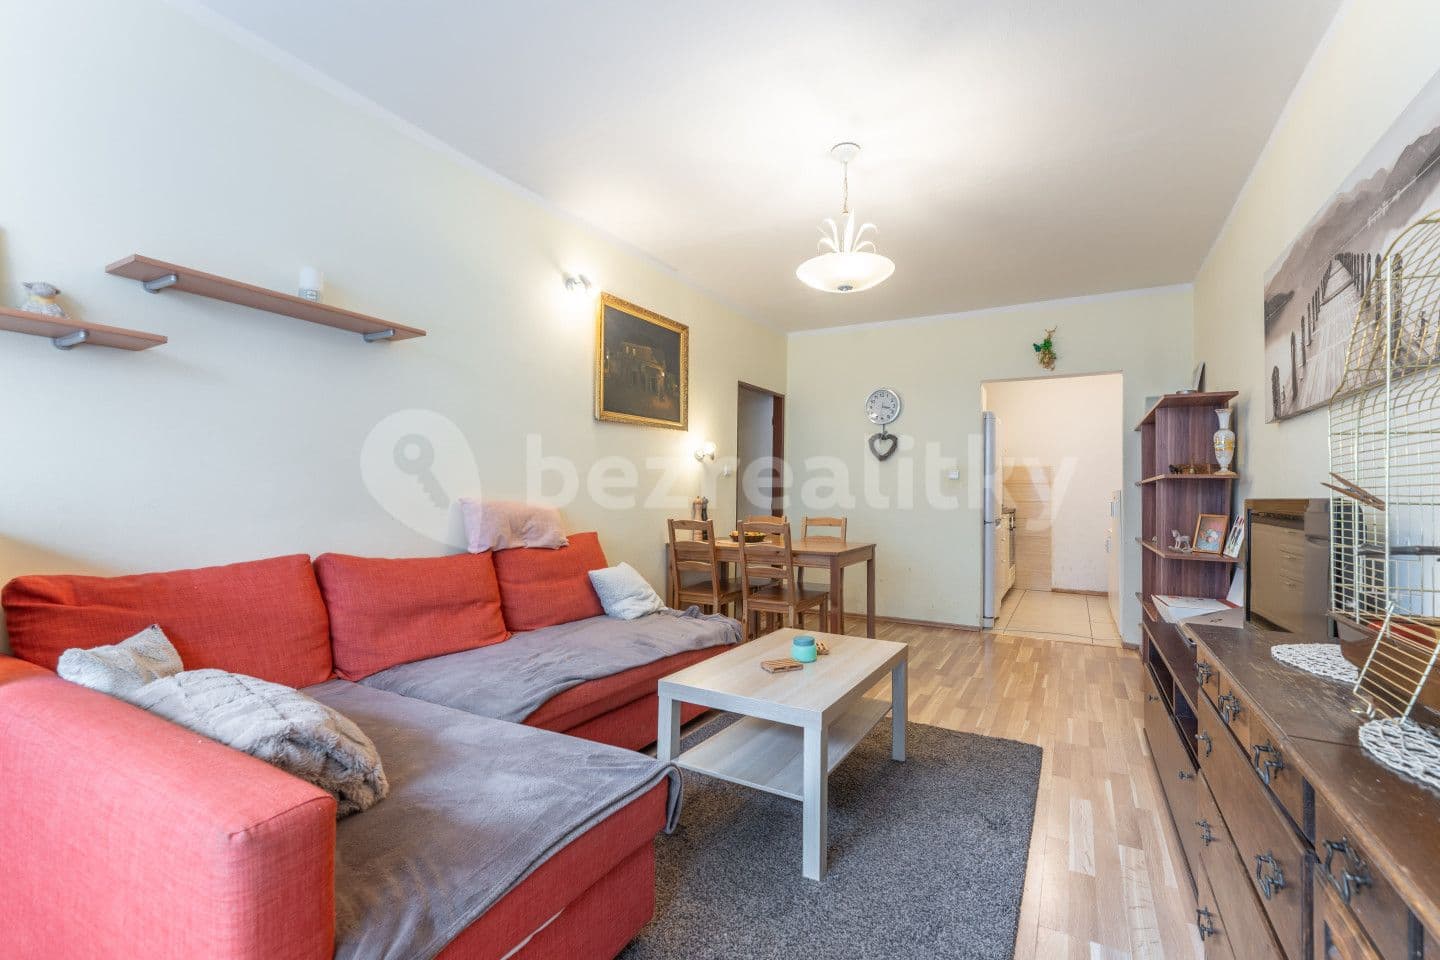 1 bedroom with open-plan kitchen flat for sale, 54 m², Aubrechtové, Prague, Prague